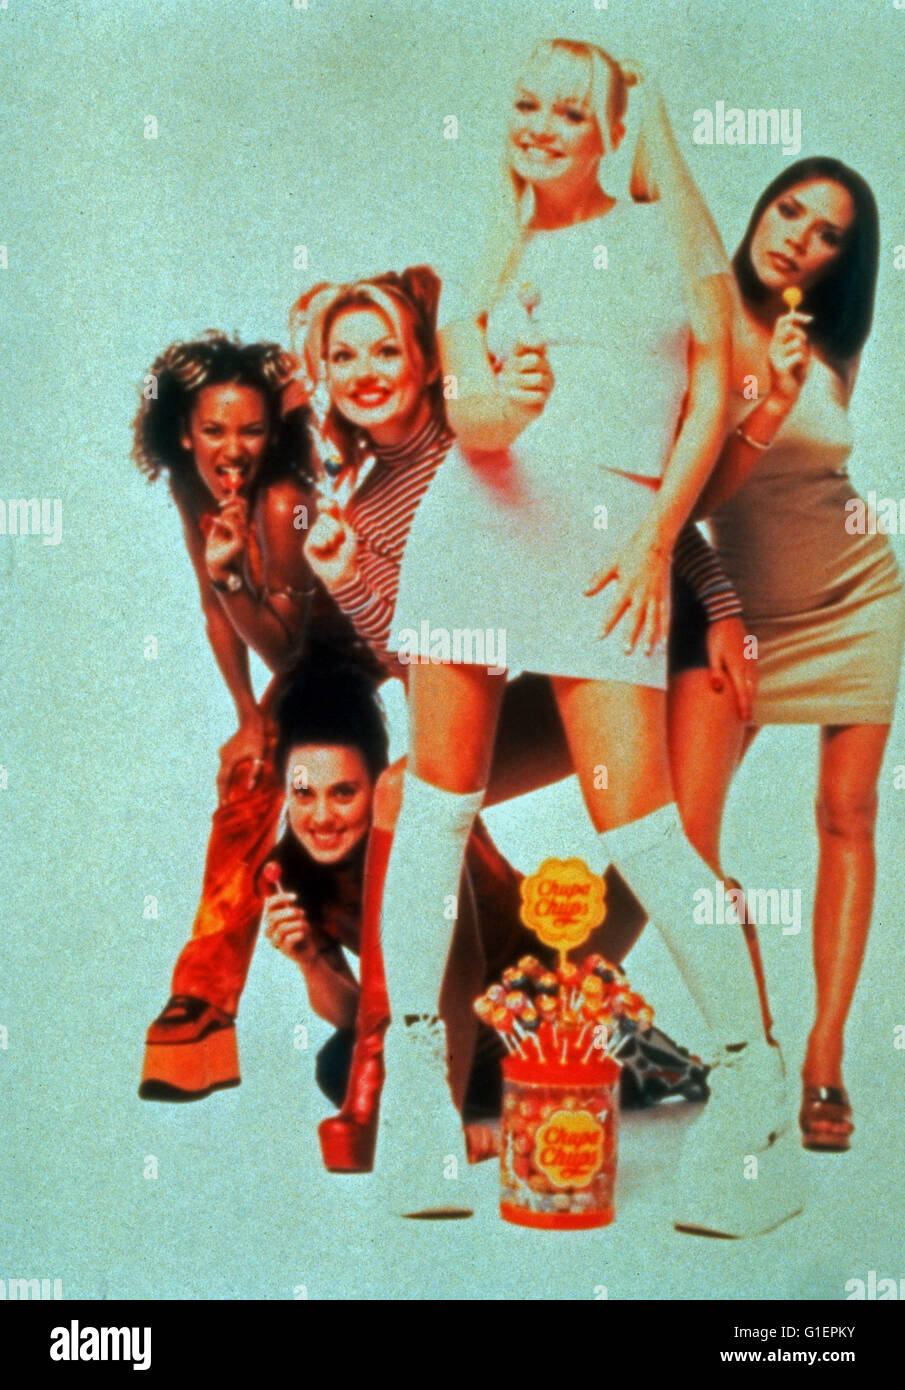 Die britische Girlband Spice Girls, bestehend aus Victoria Adams, Melanie Brown, Emma Bunton, Melanie Chisholm und Geraldine Halliwell, Großbritannien 1990er Jahre. Ragazza britannico pop band Spice Girls, Gran Bretagna degli anni novanta. Foto Stock